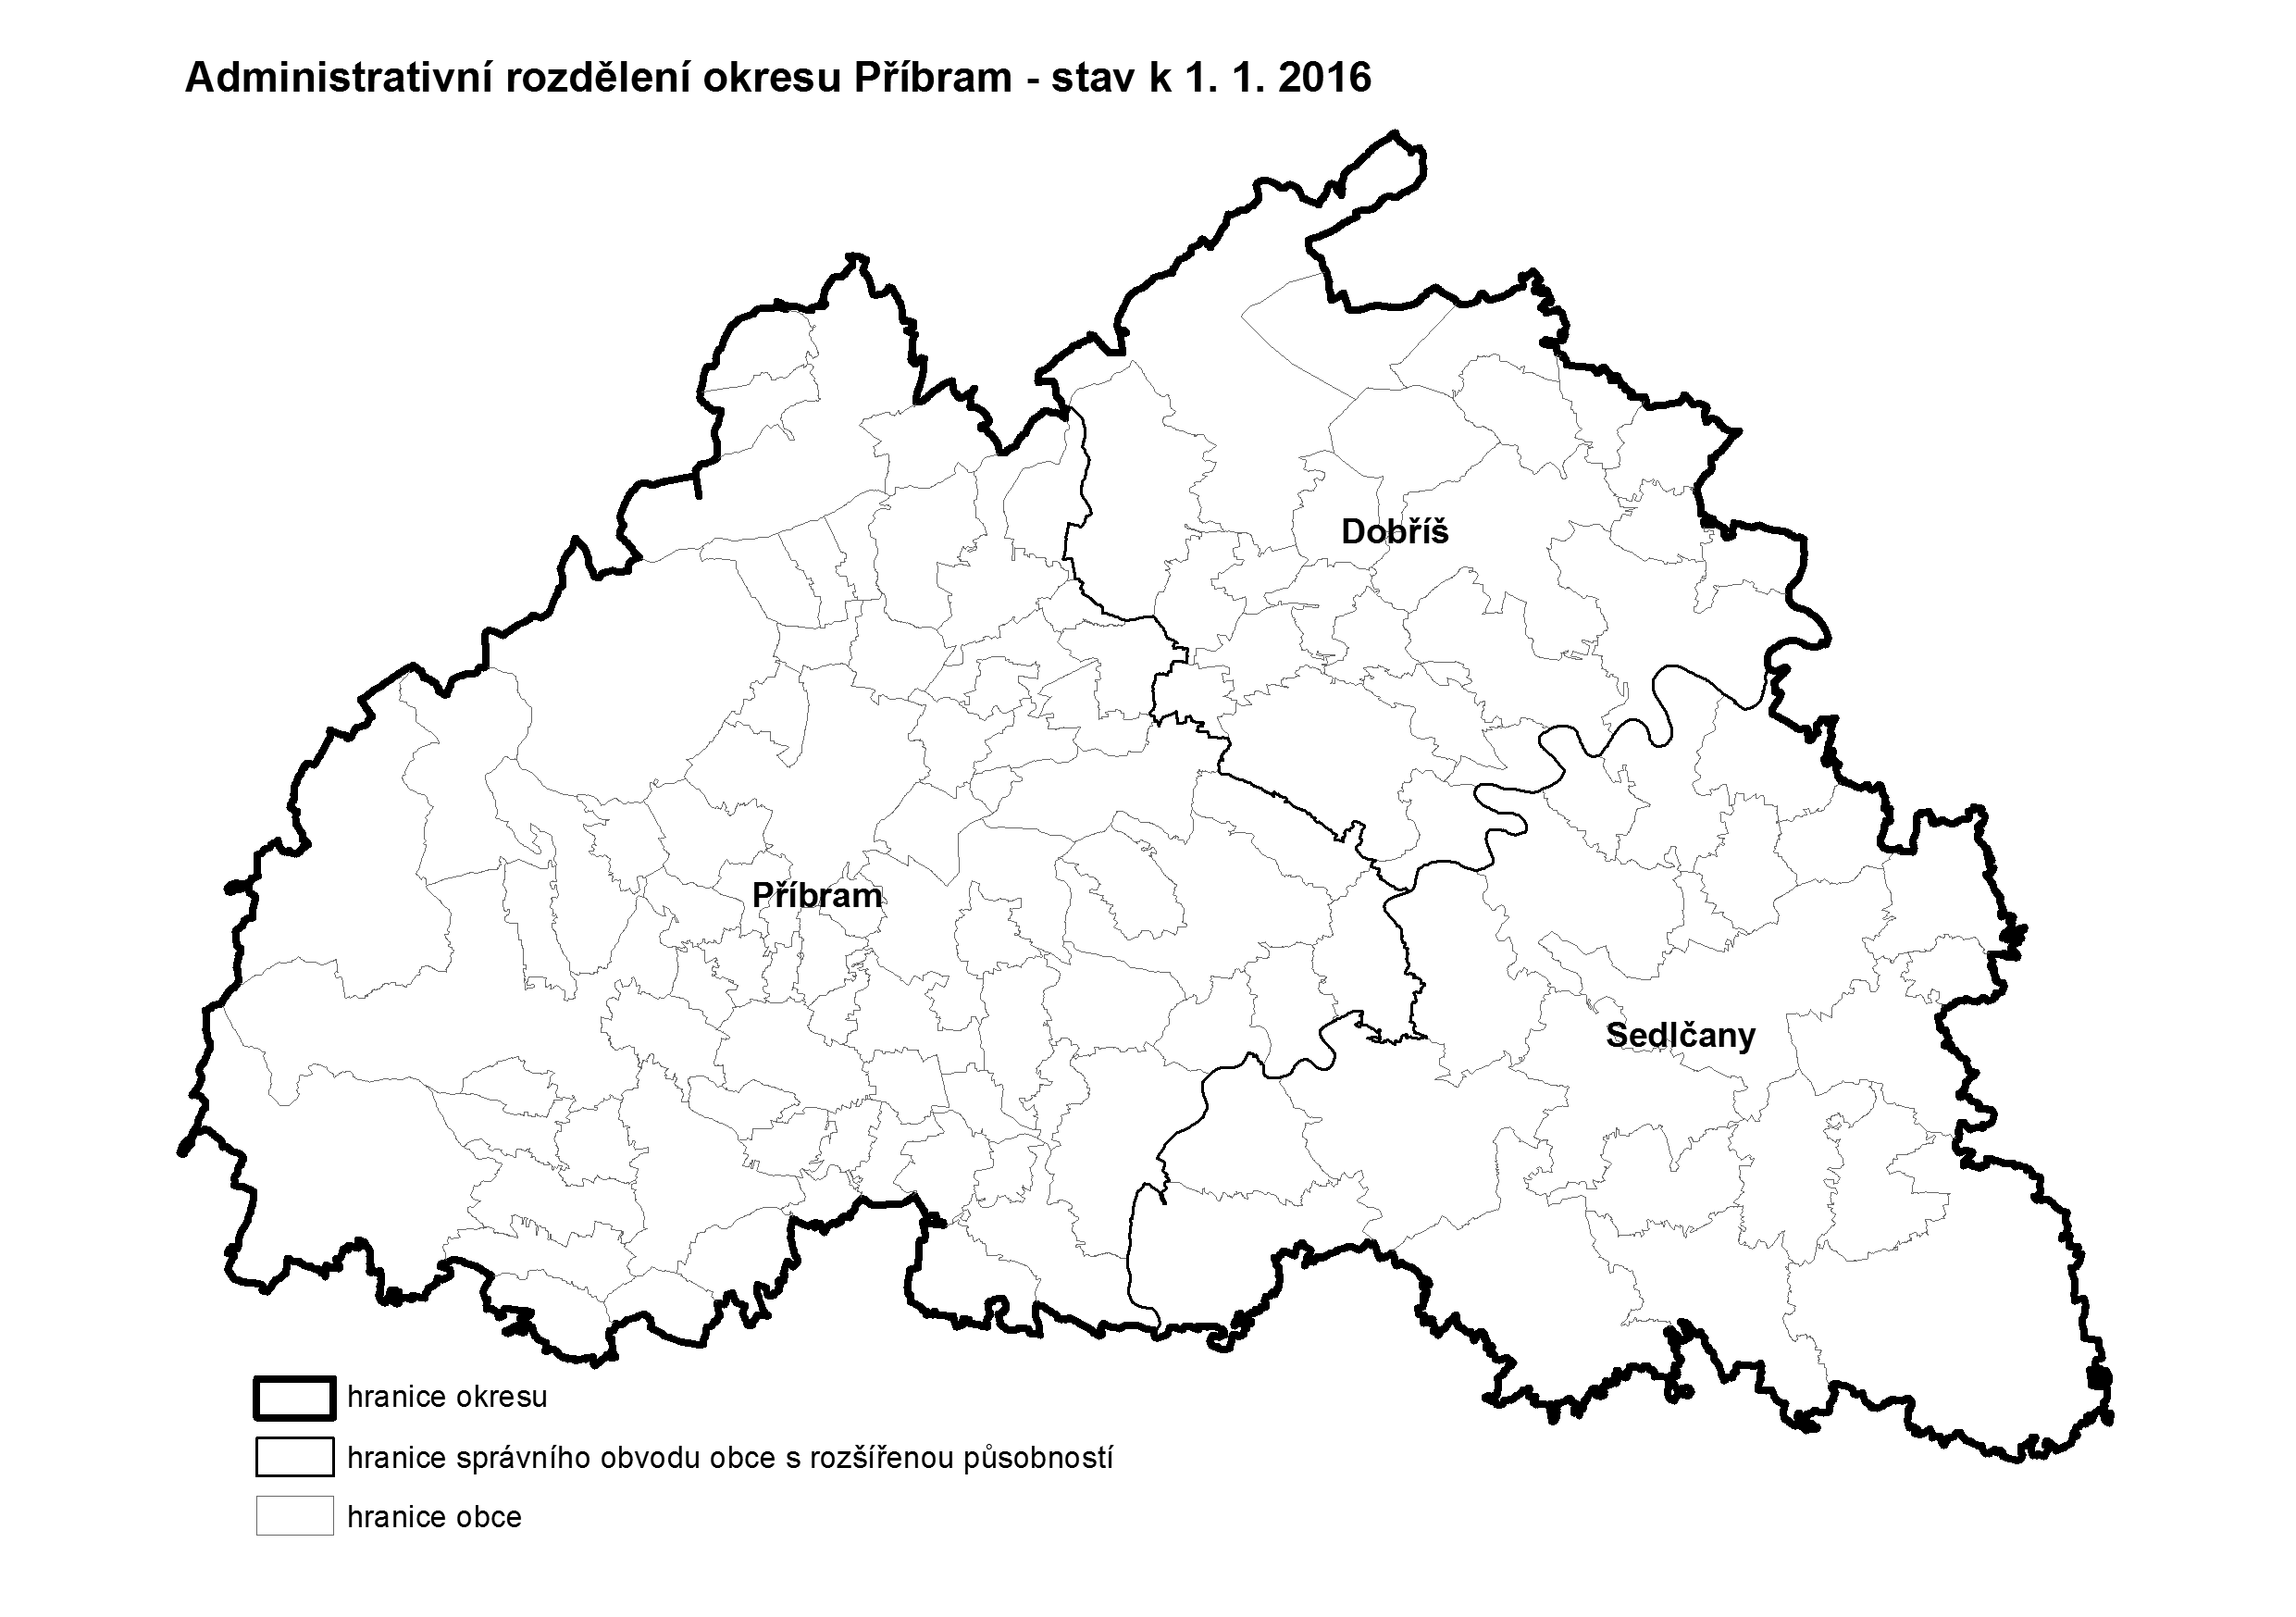 Administrativní rozdělení okresu Příbram k 1.1.2016